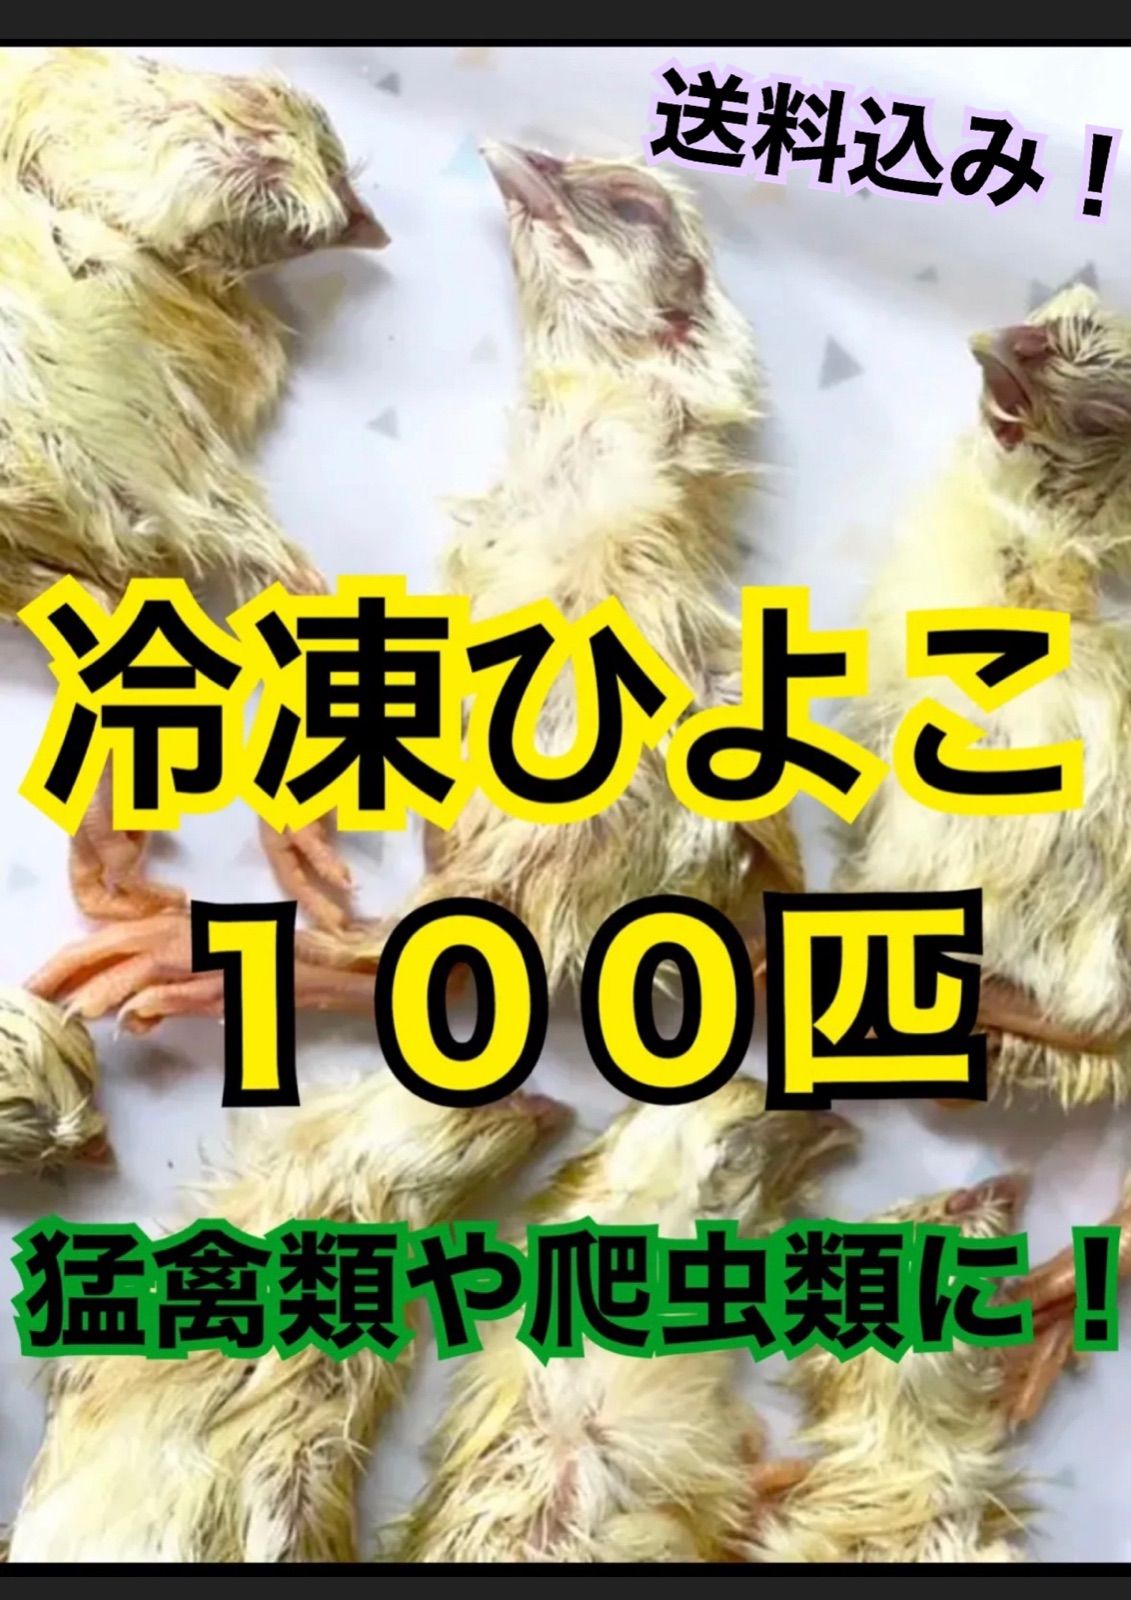 冷凍ウズラ 爬虫類・猛禽の餌 100羽入 - 爬虫類/両生類用品